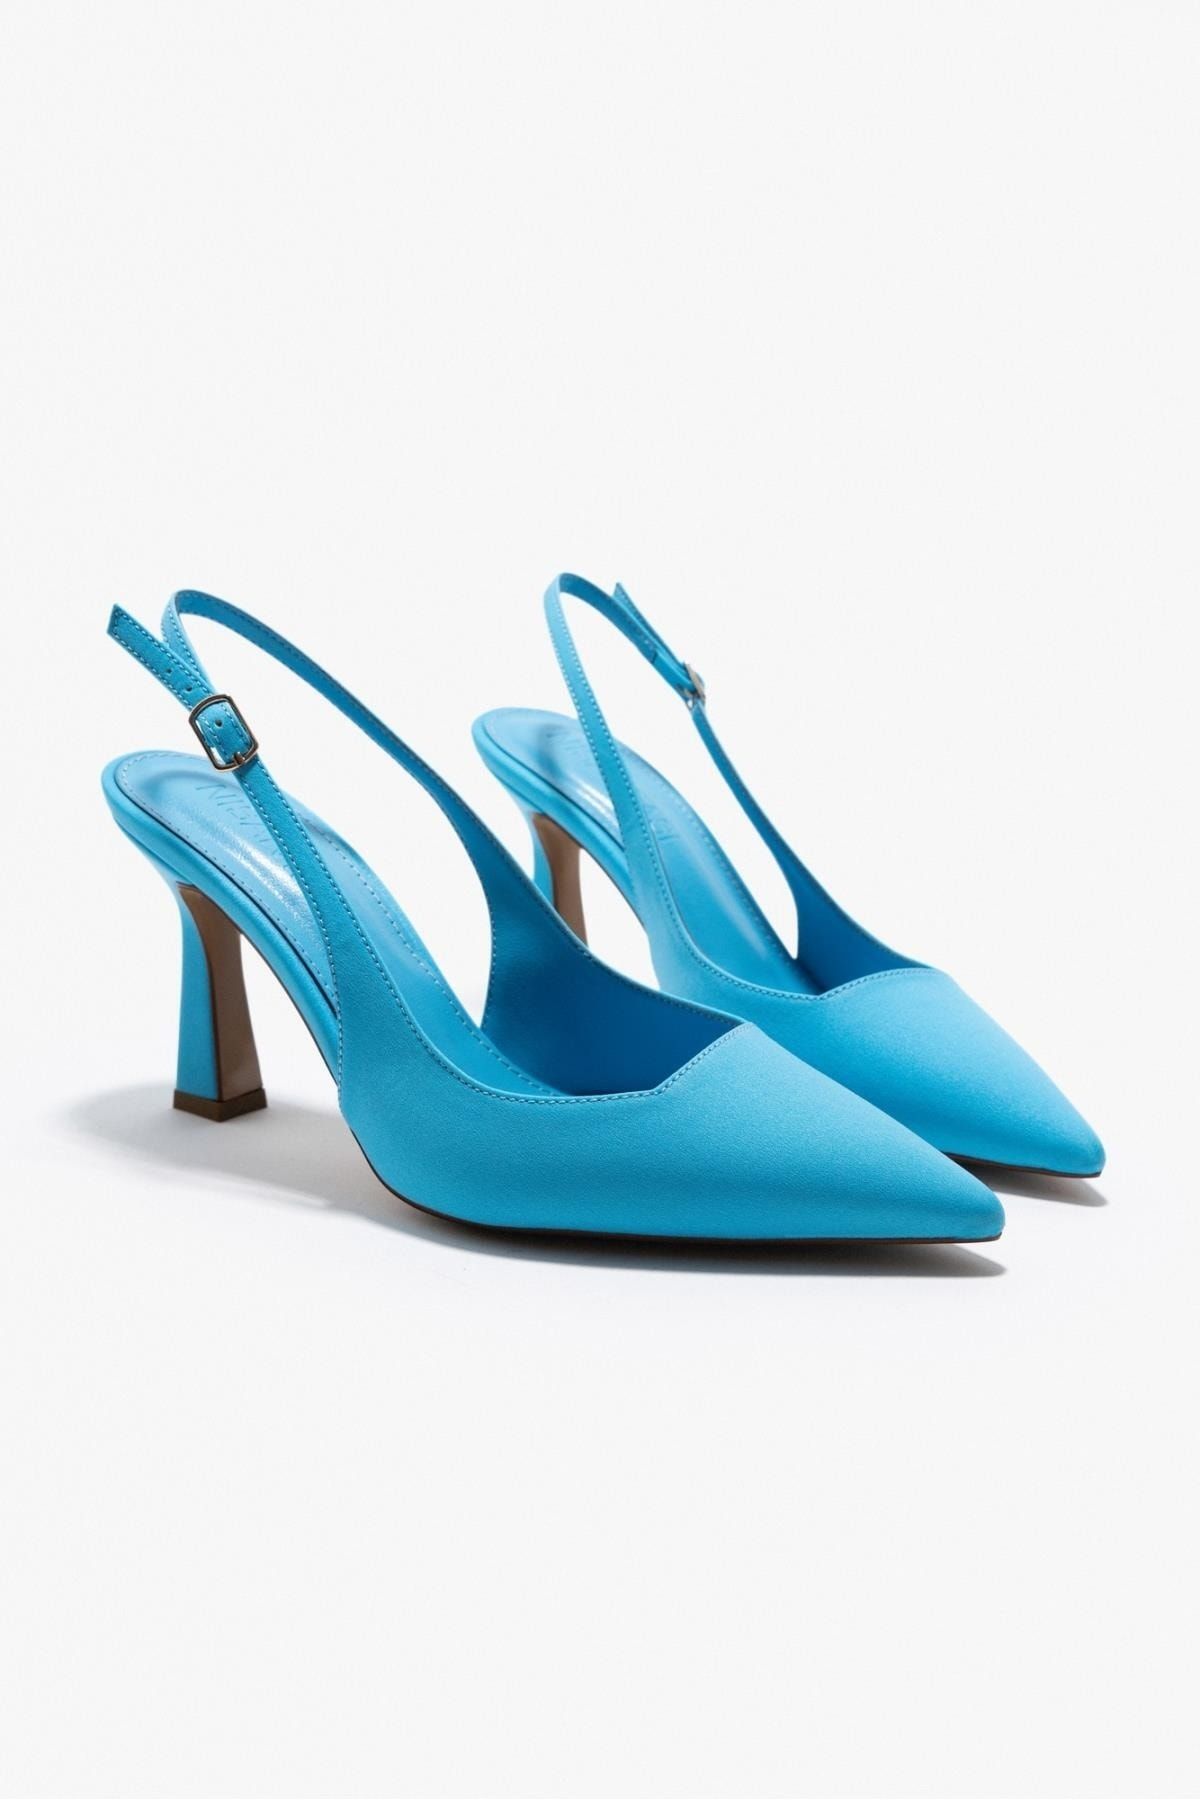 NİŞANTAŞI SHOES Mystic Açık Mavi Saten Sivri Burun Arka Bağlı Kadın Topuklu Ayakkabı